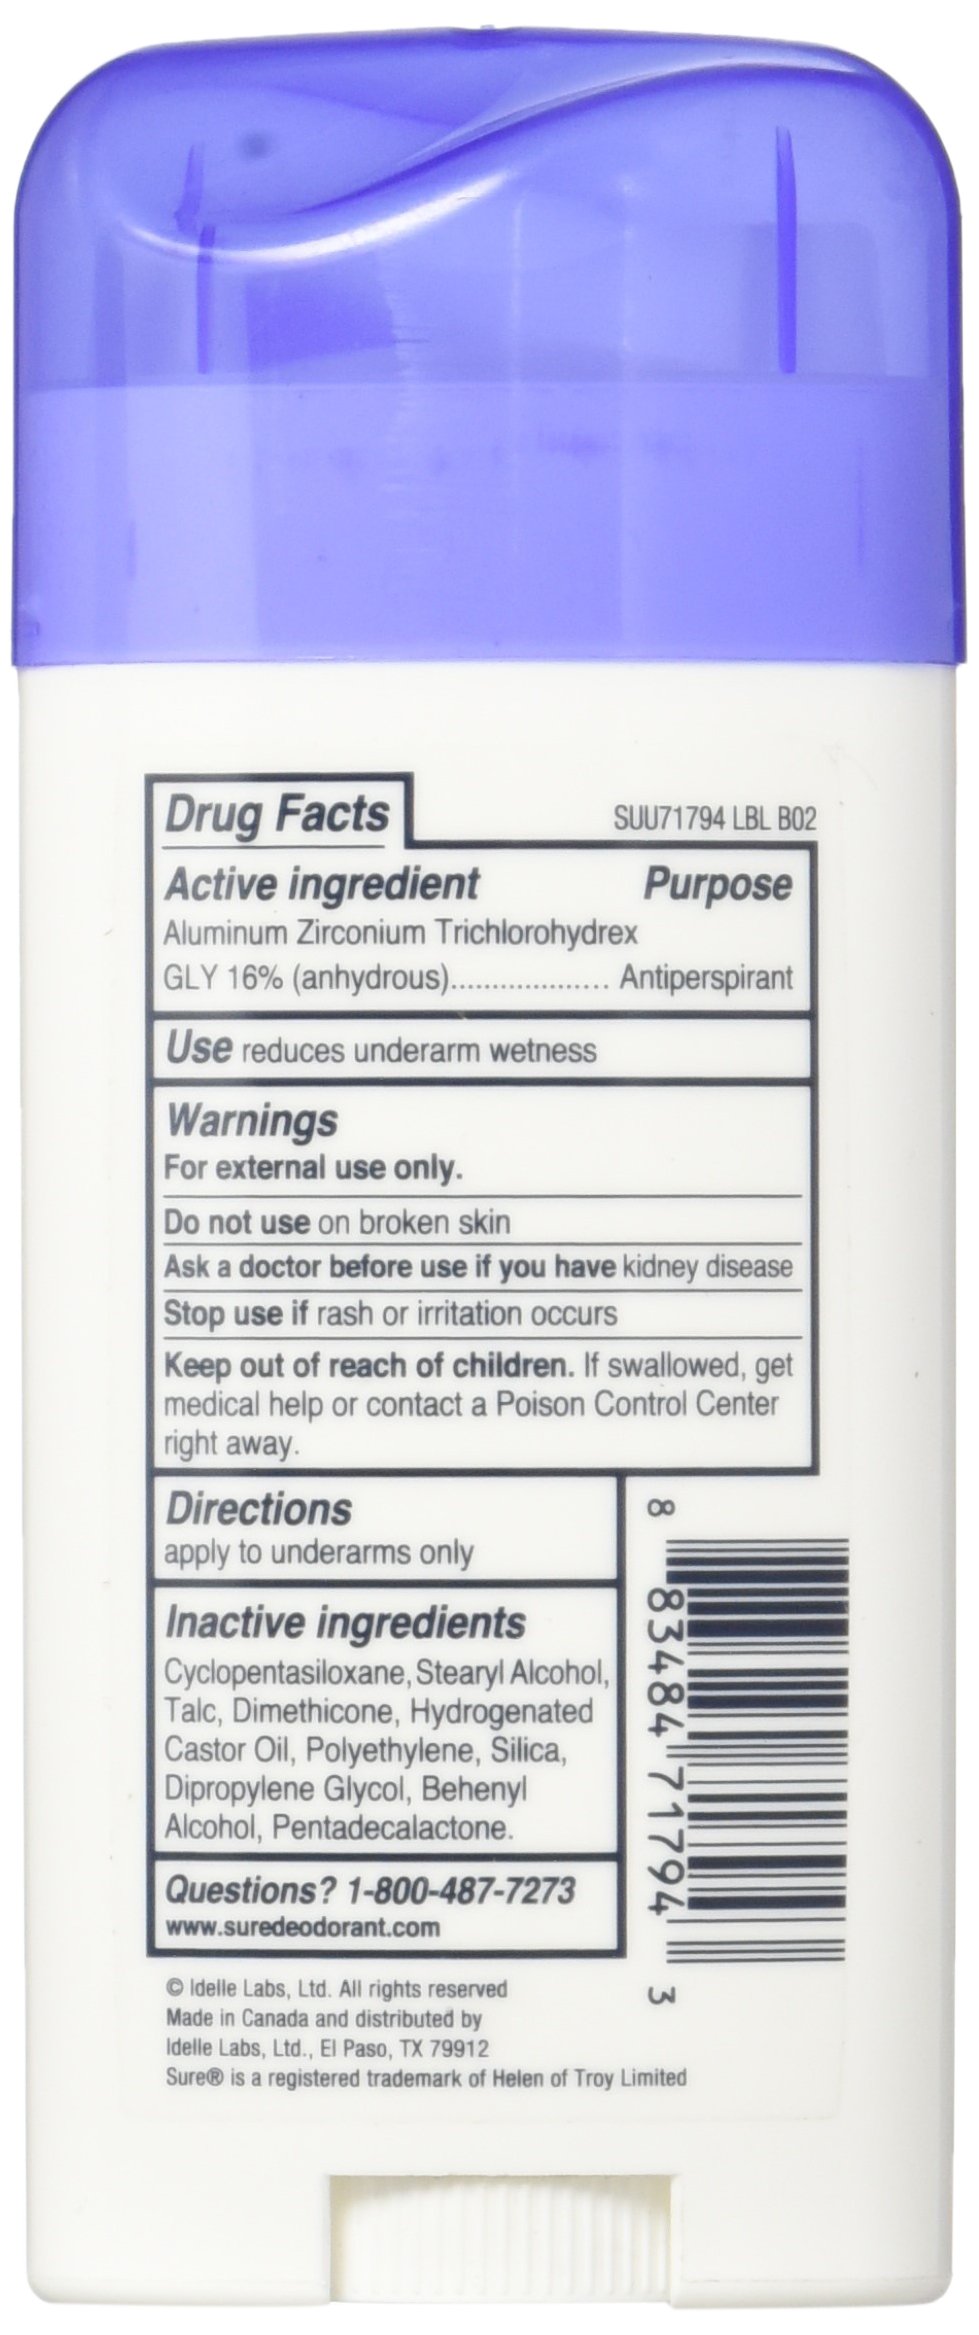 Sure Original Solid Unscented, Anti-Perspirant Deodorant, 2.7 oz (Pack of 2)